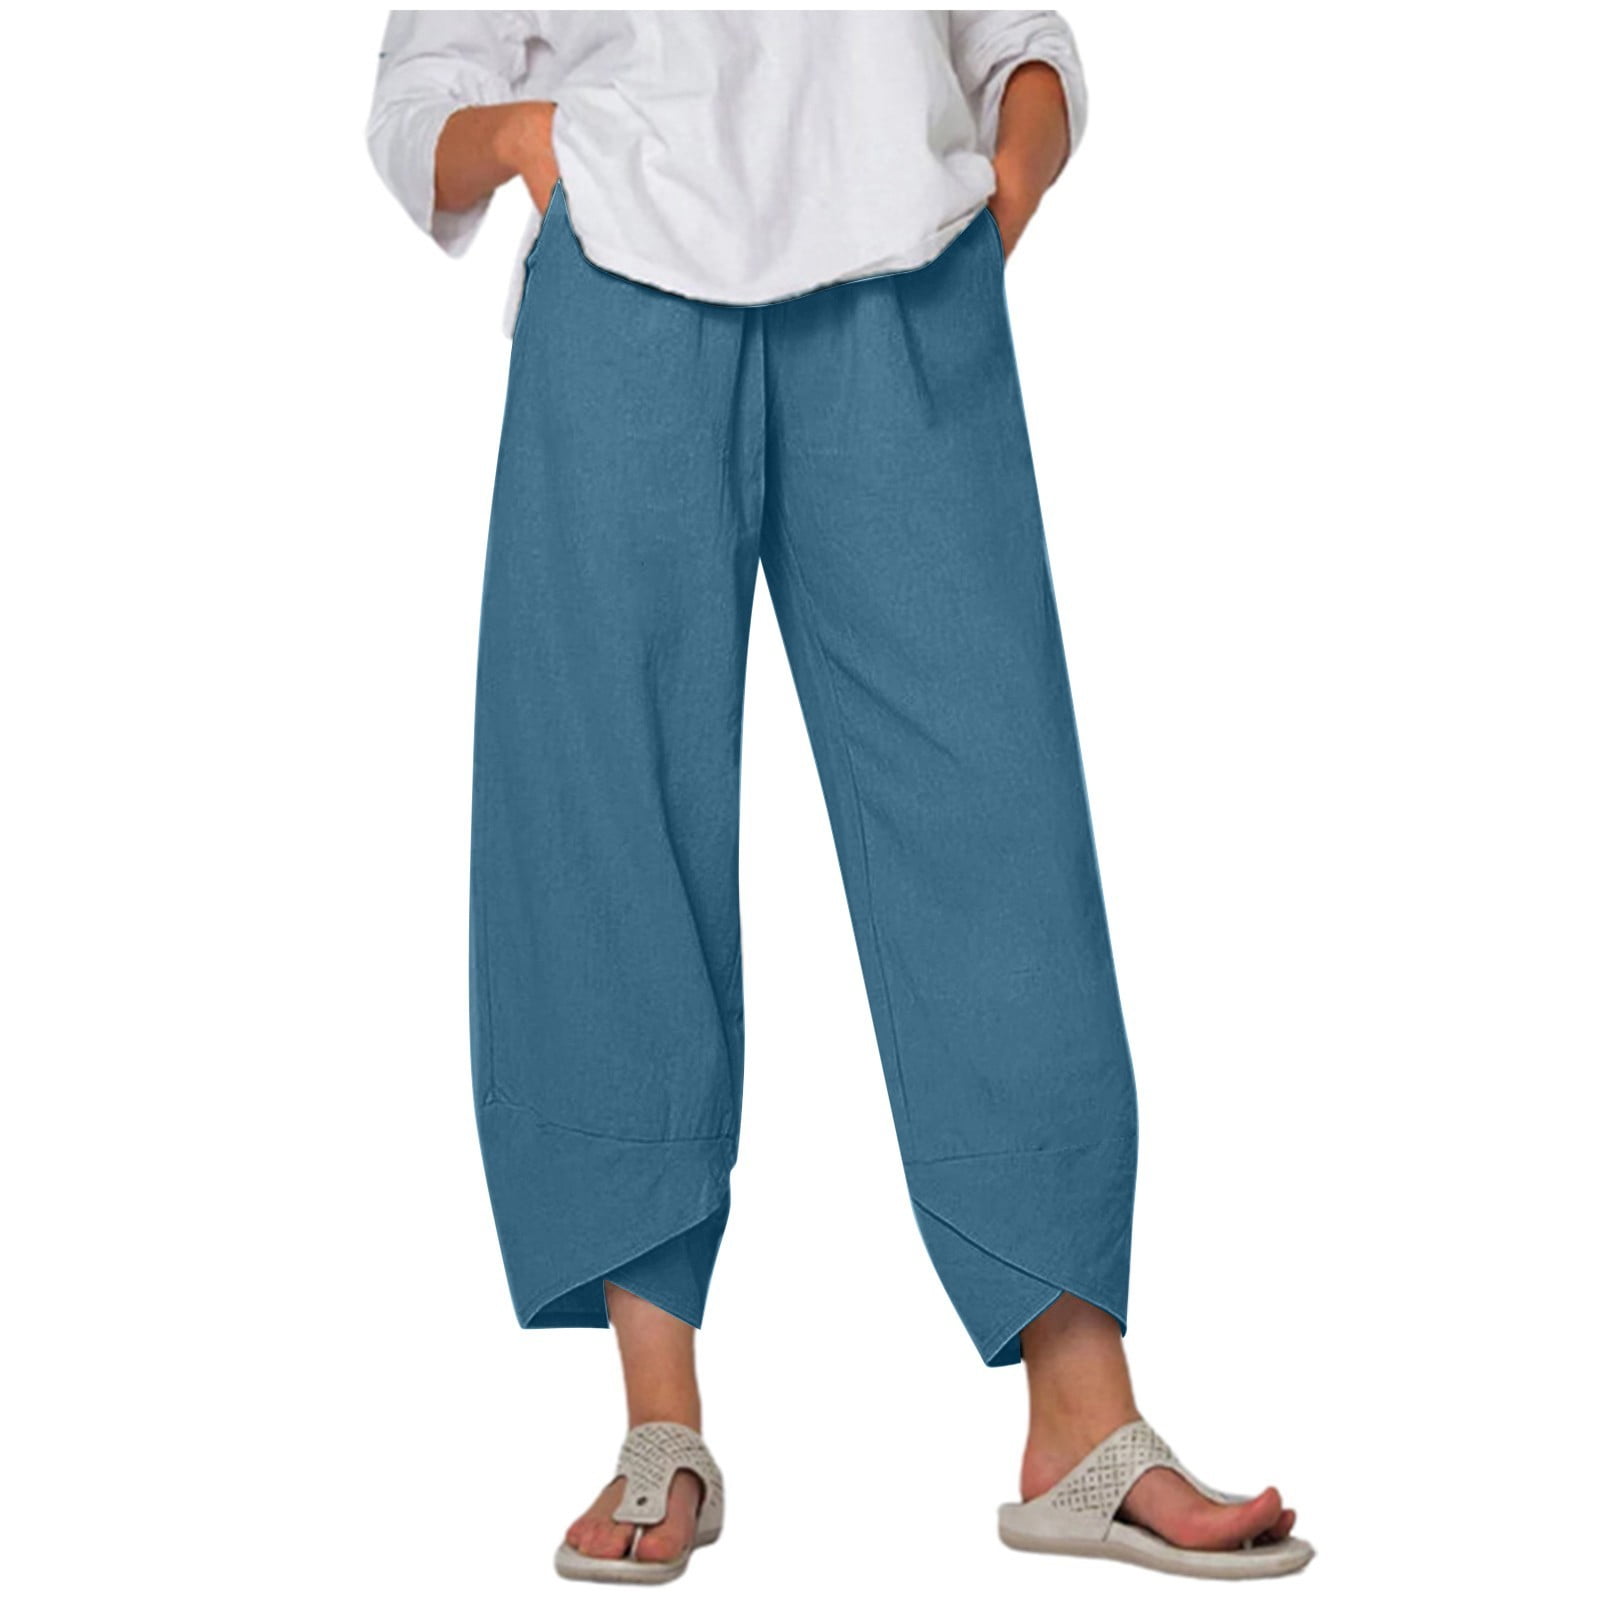 Linen Pants For Women Beach Petite High Waist Solid Summer Cotton Loose ...